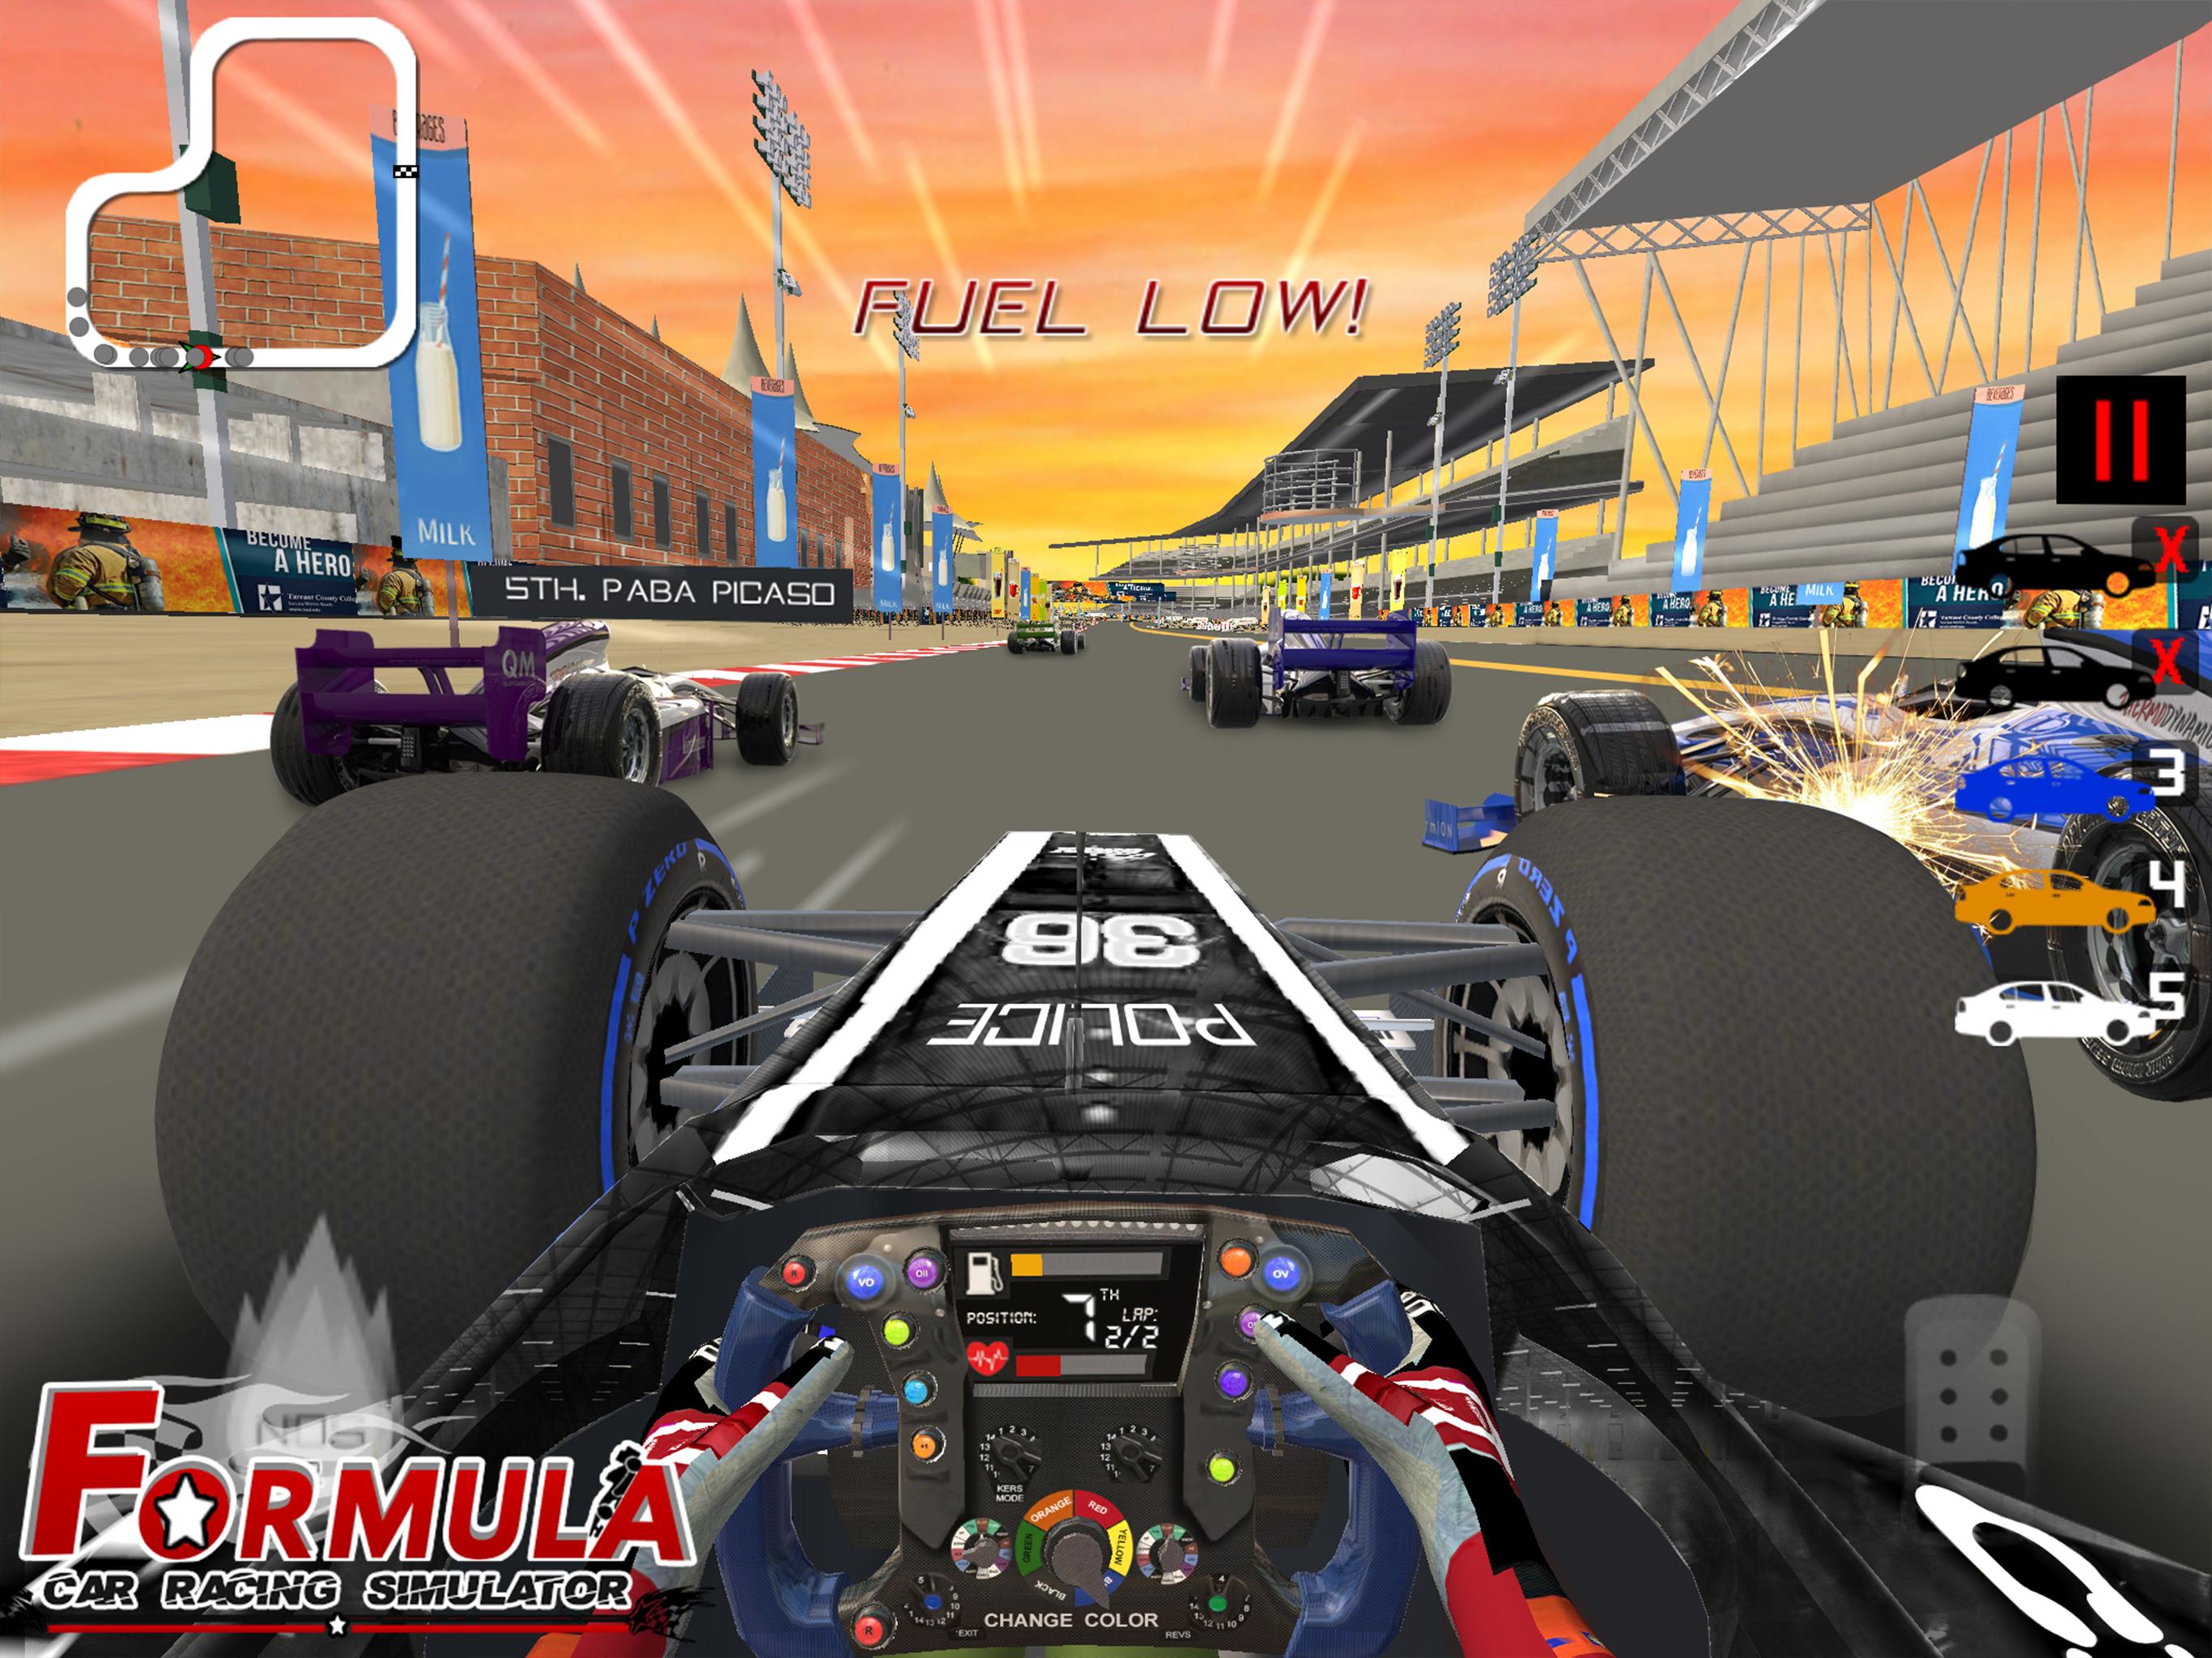 Formula Car Racing Simulator mobile No 1 Race game 16 Screenshot 15